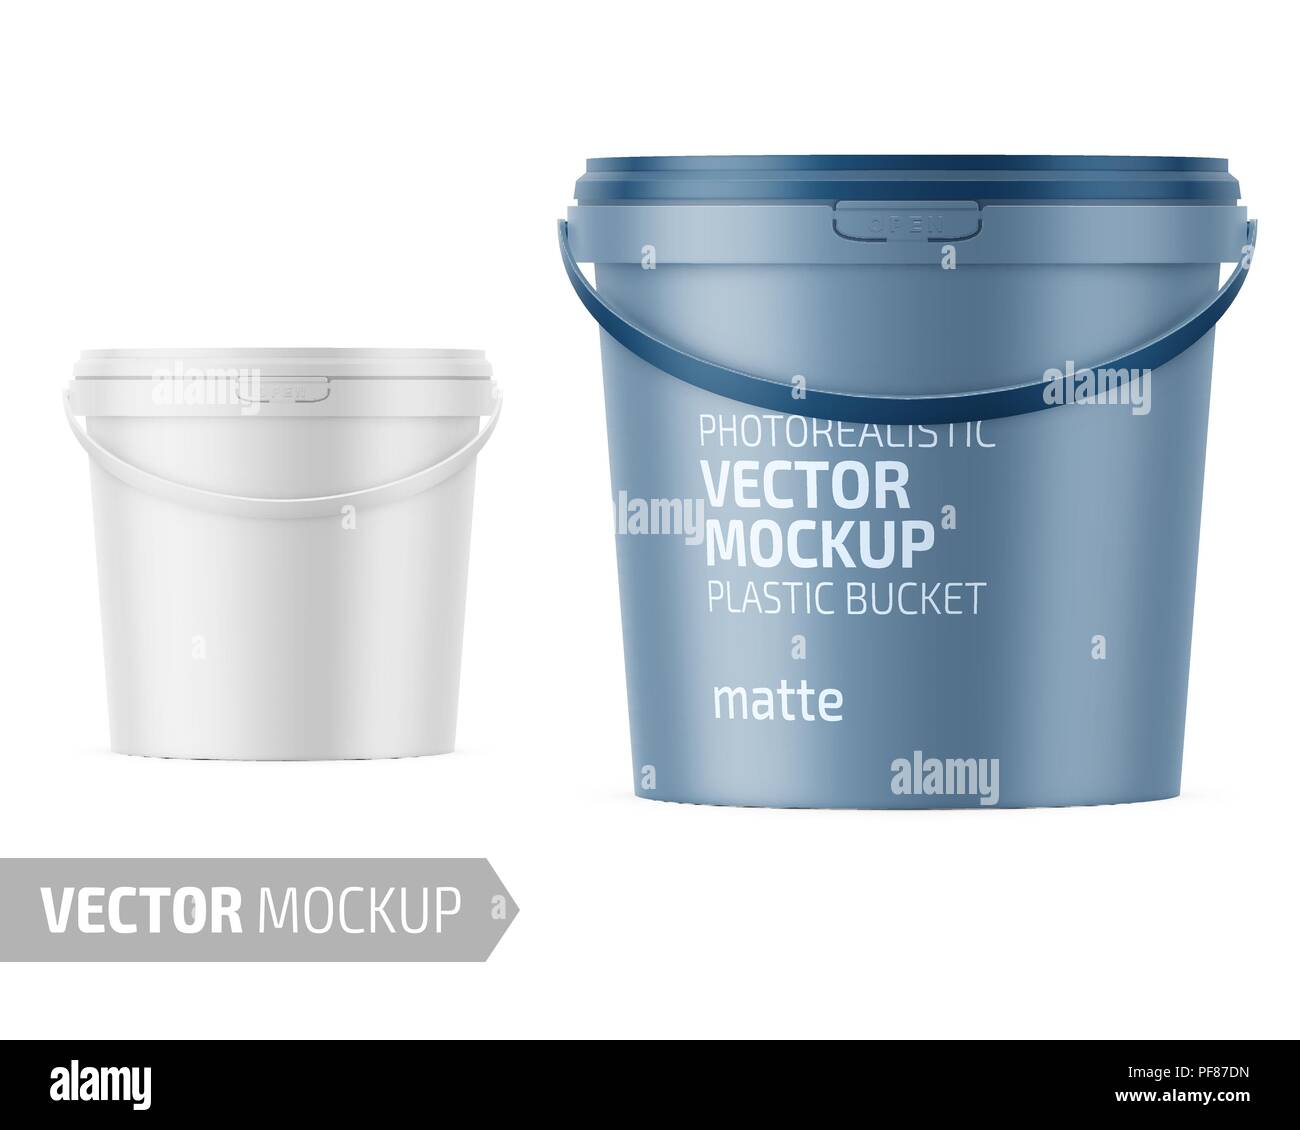 Matt-weißes Plastik Eimer für Lebensmittel, Farbe, Hausrat. 900 ml.  Realistische packaging Vector mockup Vorlage mit Sample Design  Stock-Vektorgrafik - Alamy